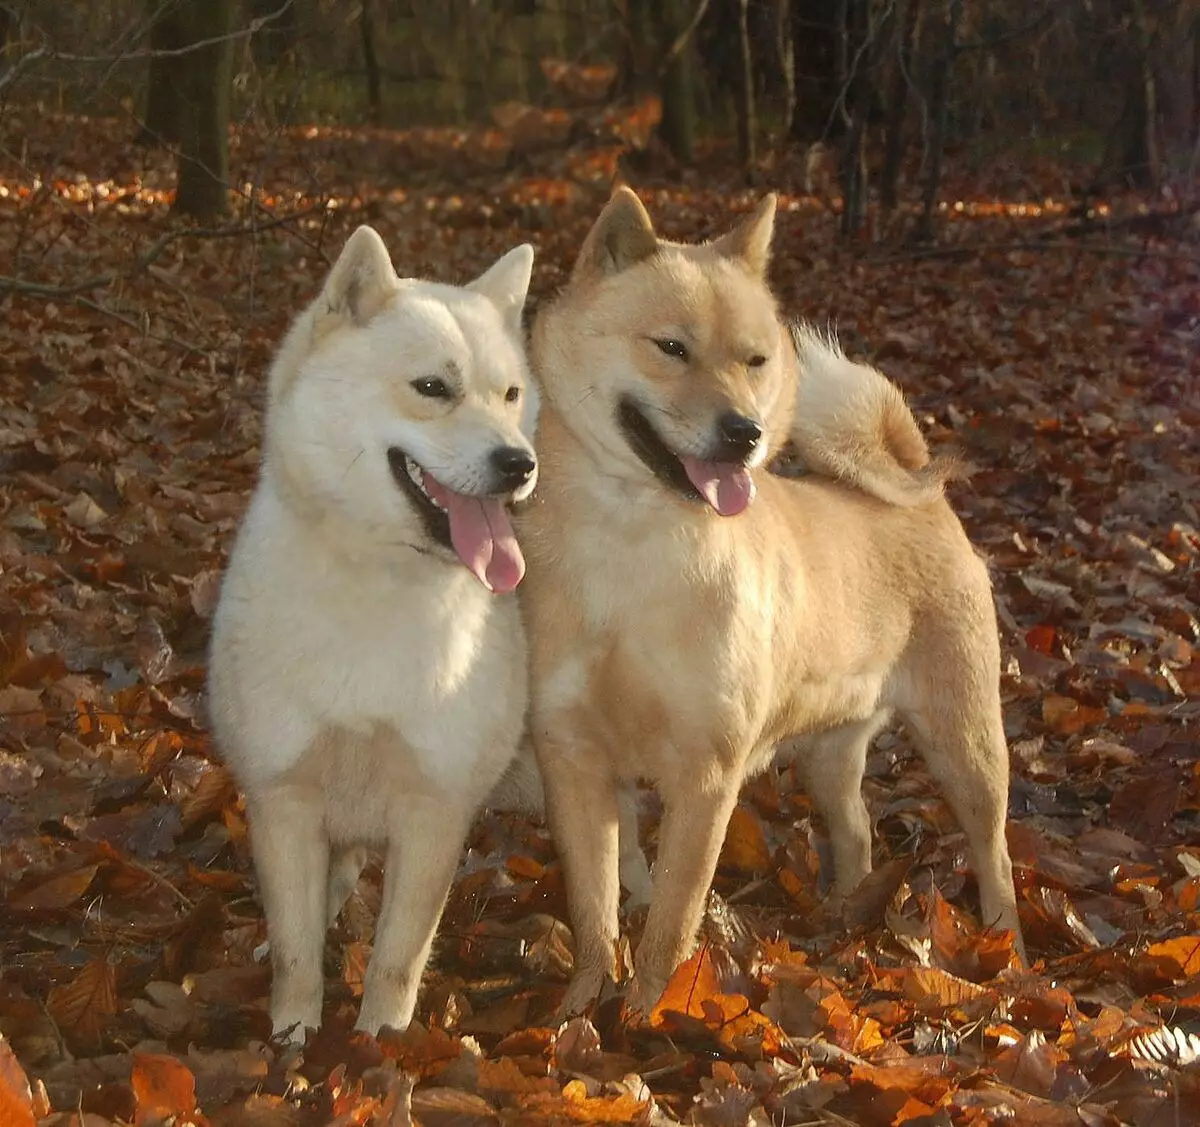 Japanilaiset koirat (77 kuvaa): suuret ja pienet koirat punainen, valkoinen ja tiikeri väri, metsästys- ja huoltolajikkeet 12109_47